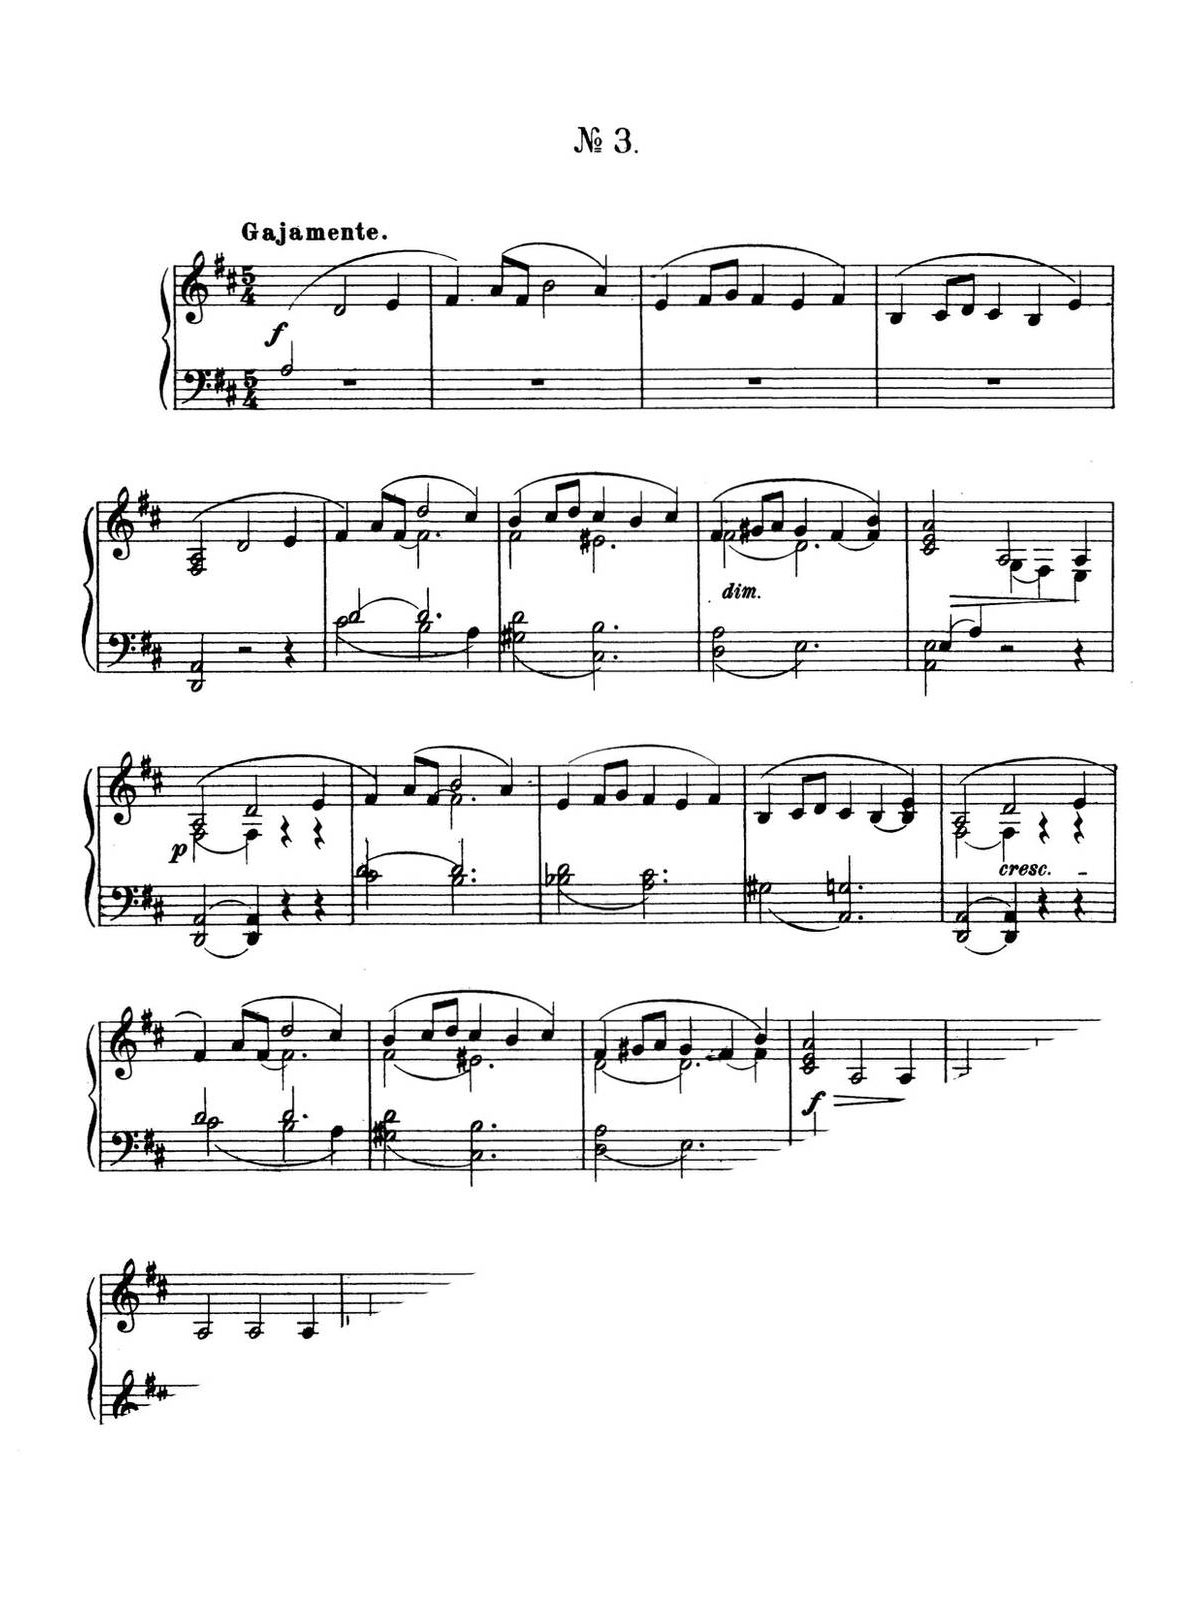 Gliere, 12 Esquisses, Op.47-p06